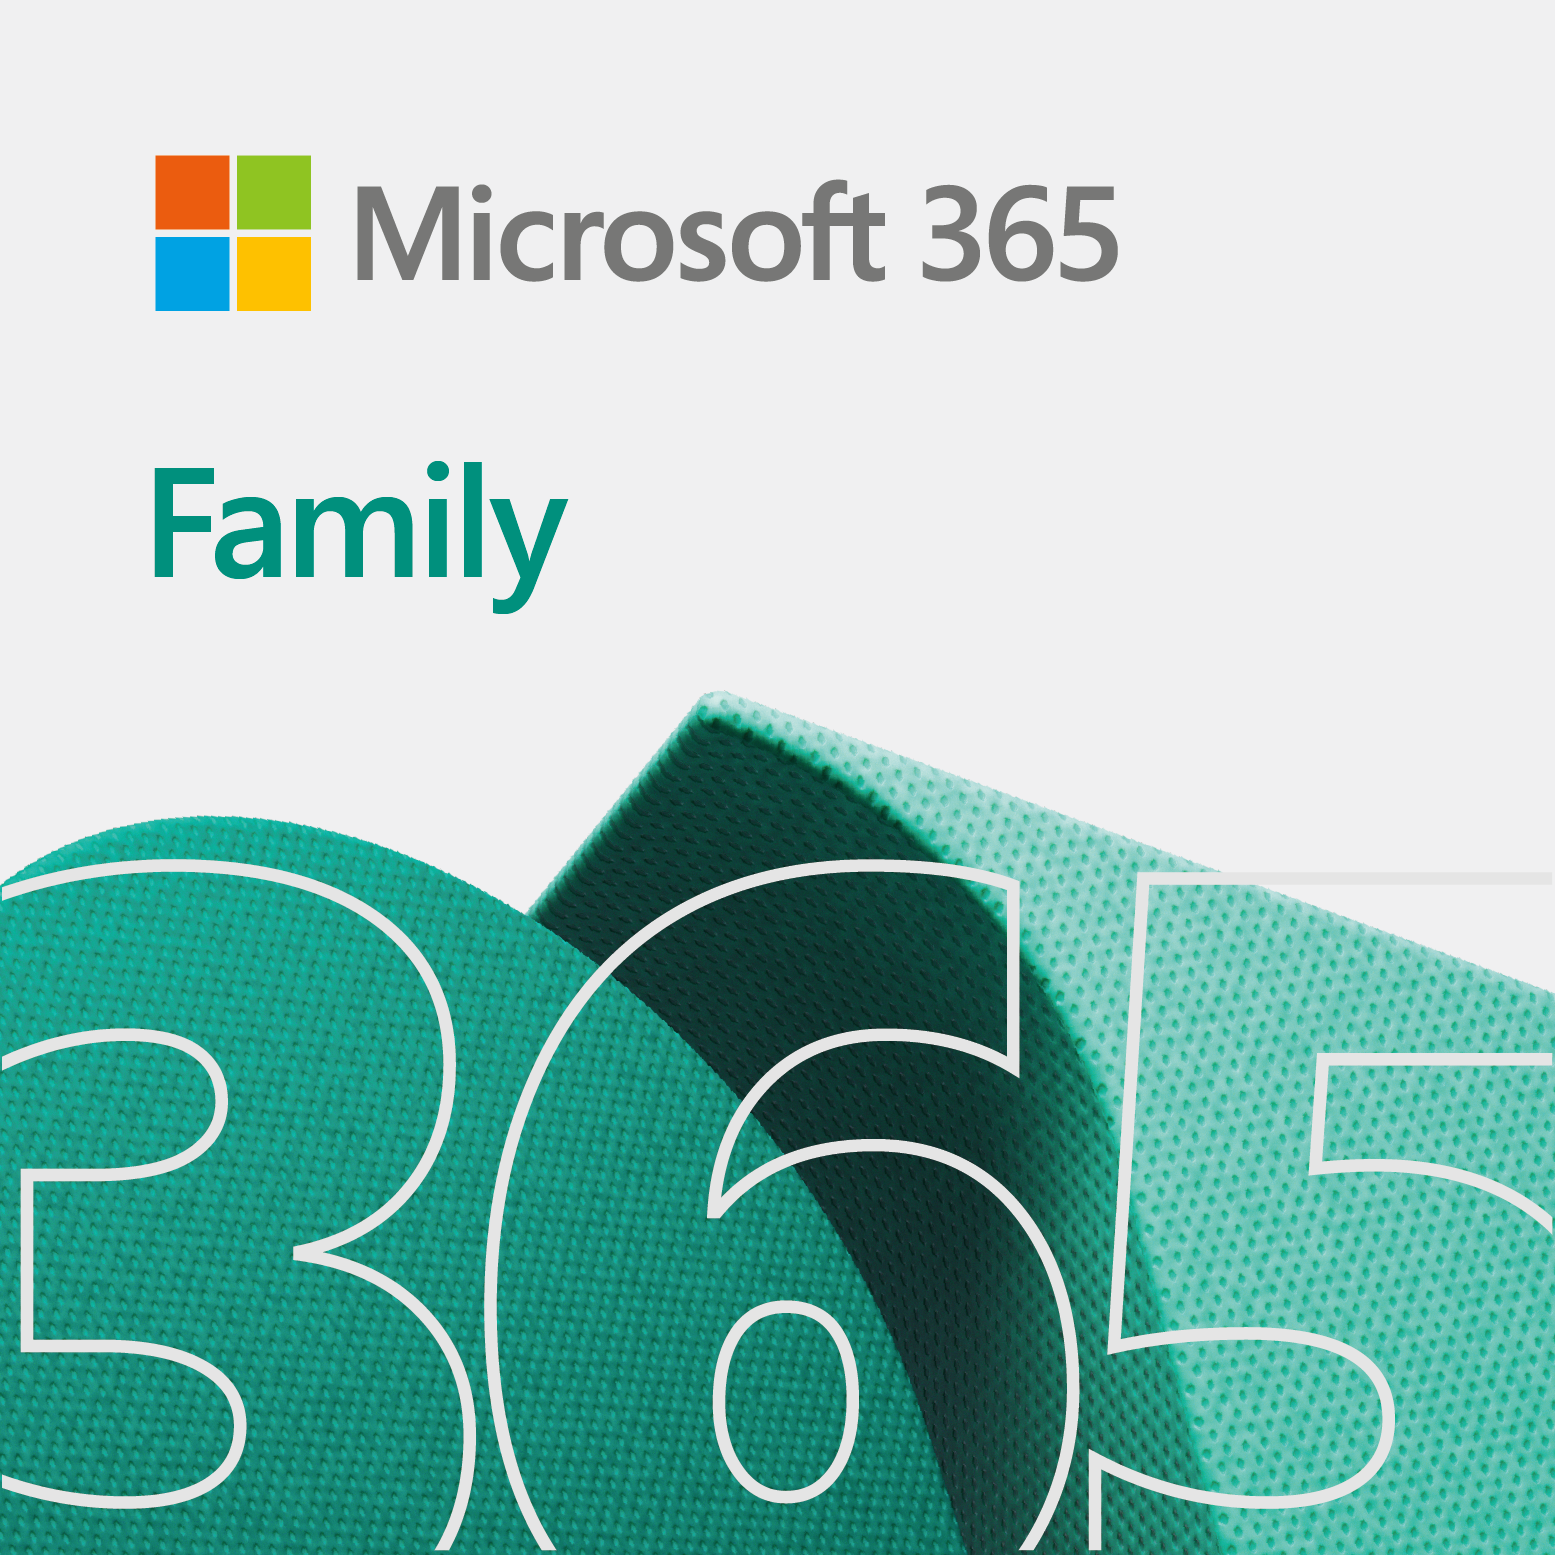 Phần mềm Microsoft Office 365 Family (Mua chung) | 12 tháng | Dành cho 1 người| 5 thiết bị/người | 1TB lưu trữ OneDrive